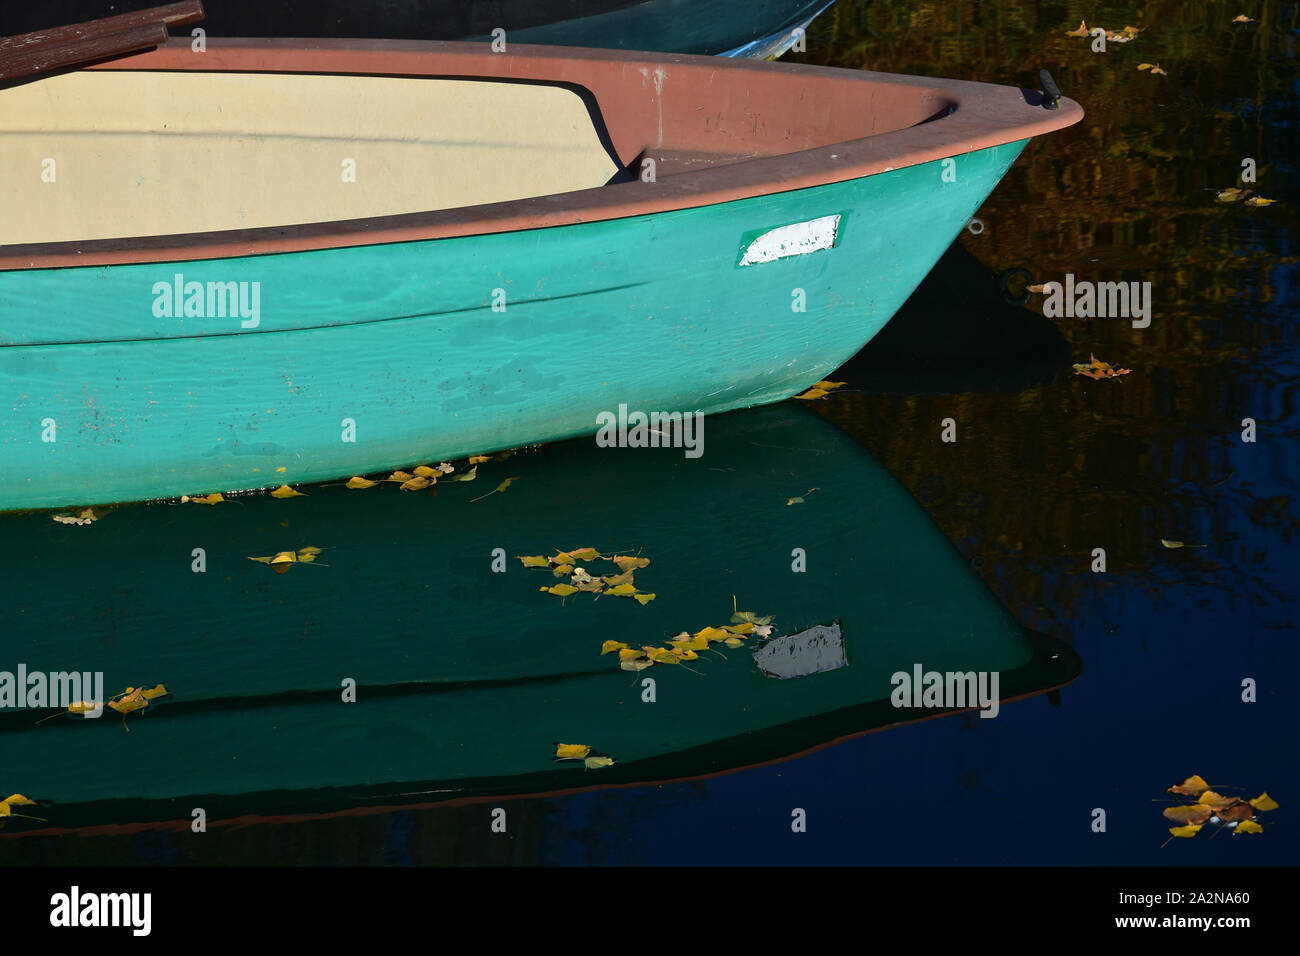 La parte anteriore di un verde in barca nelle acque di un lago che riflette nell'acqua. Alcune foglie di giallo sono galleggianti sulla superficie dell'acqua. Foto Stock